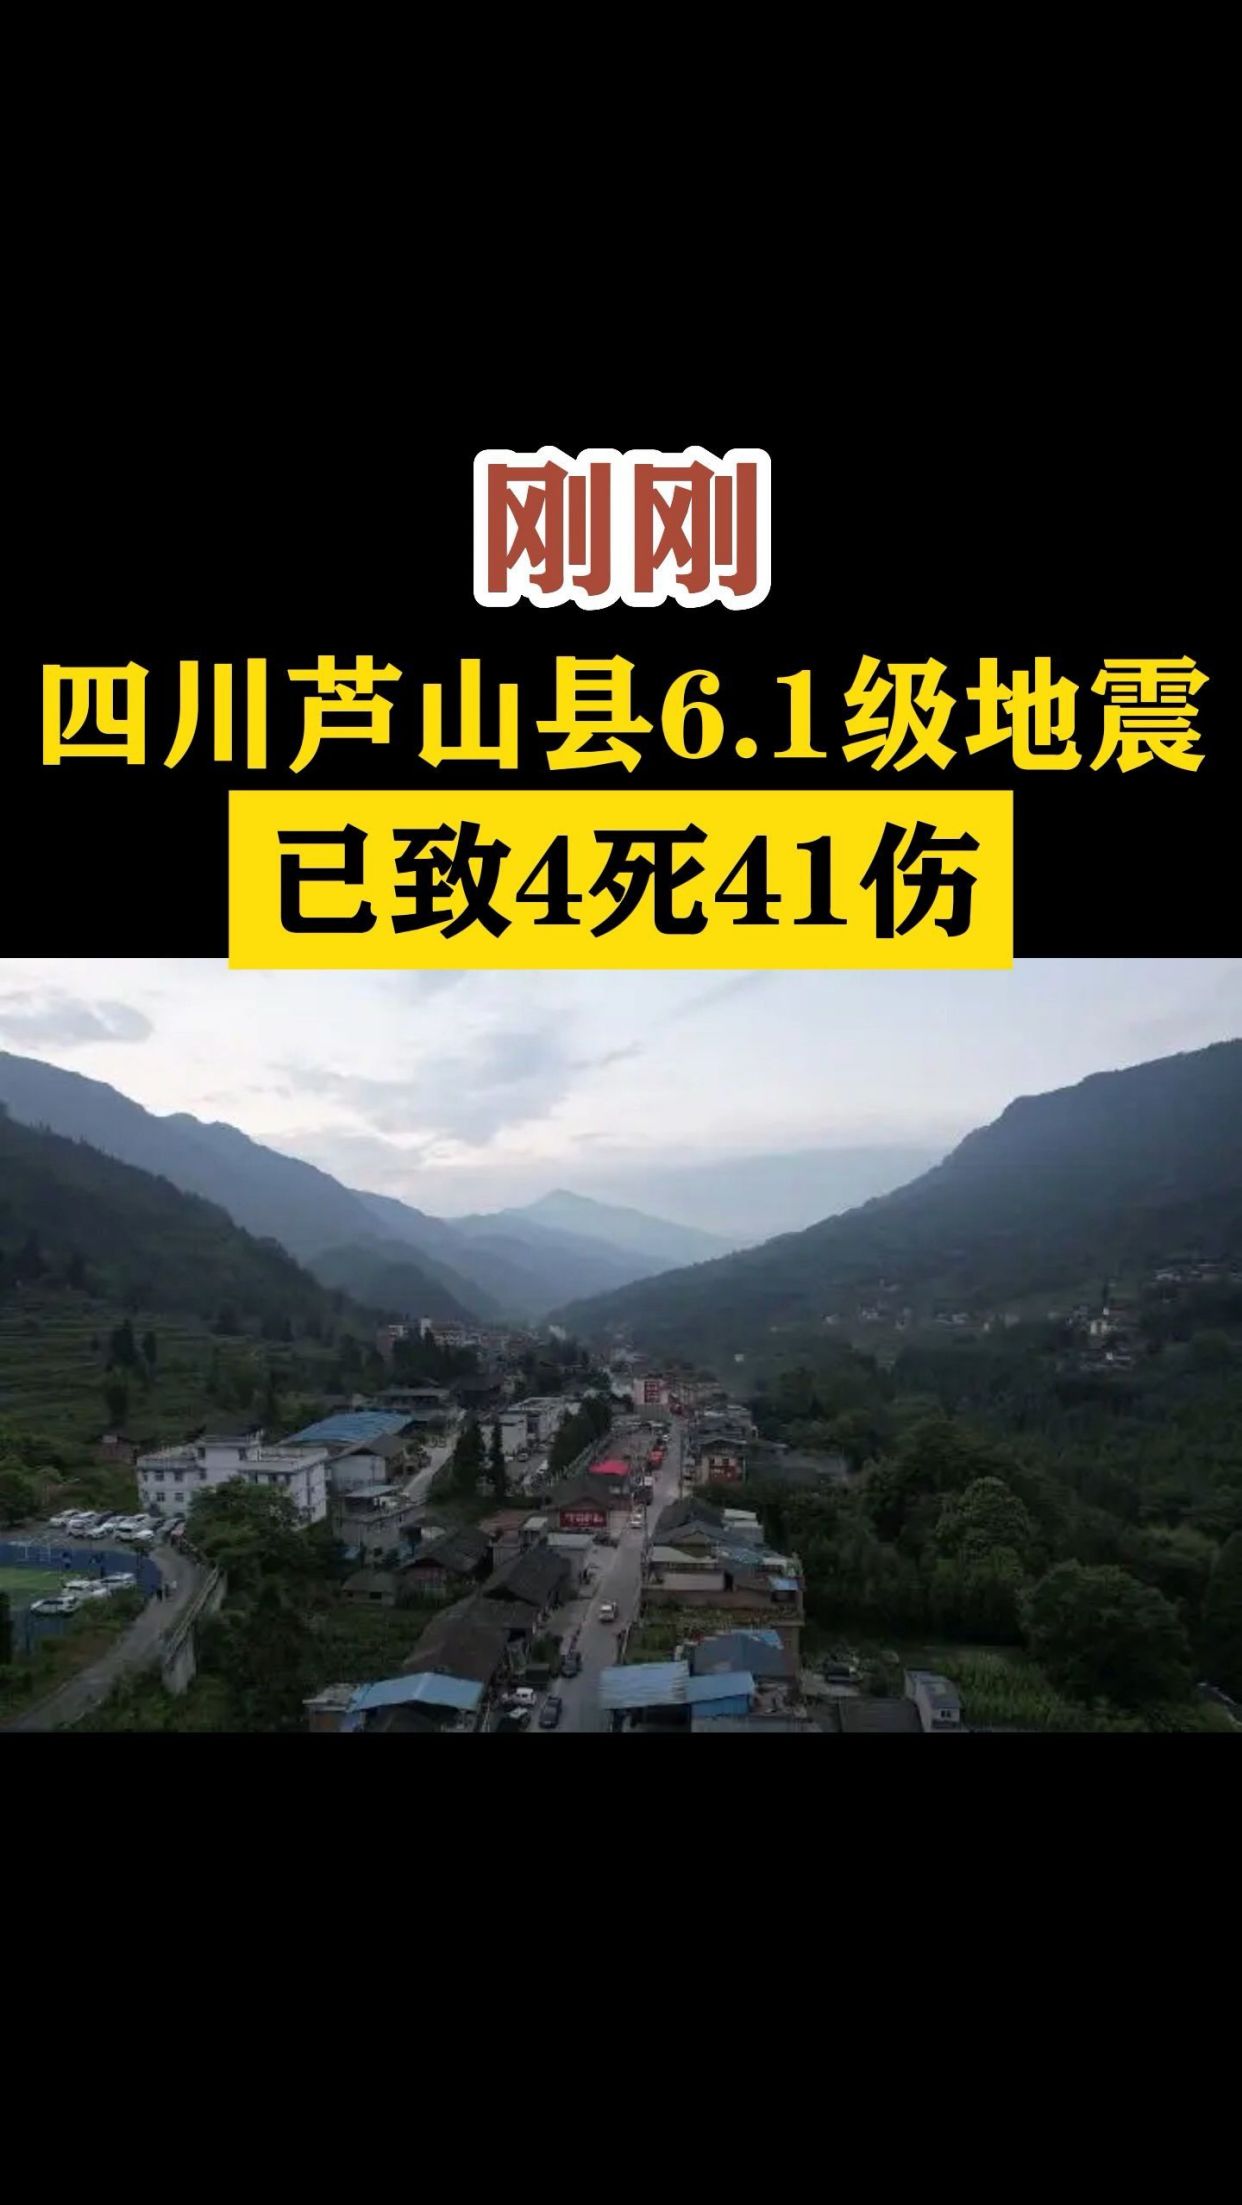 刚刚四川芦山县61级地震已致4死41伤